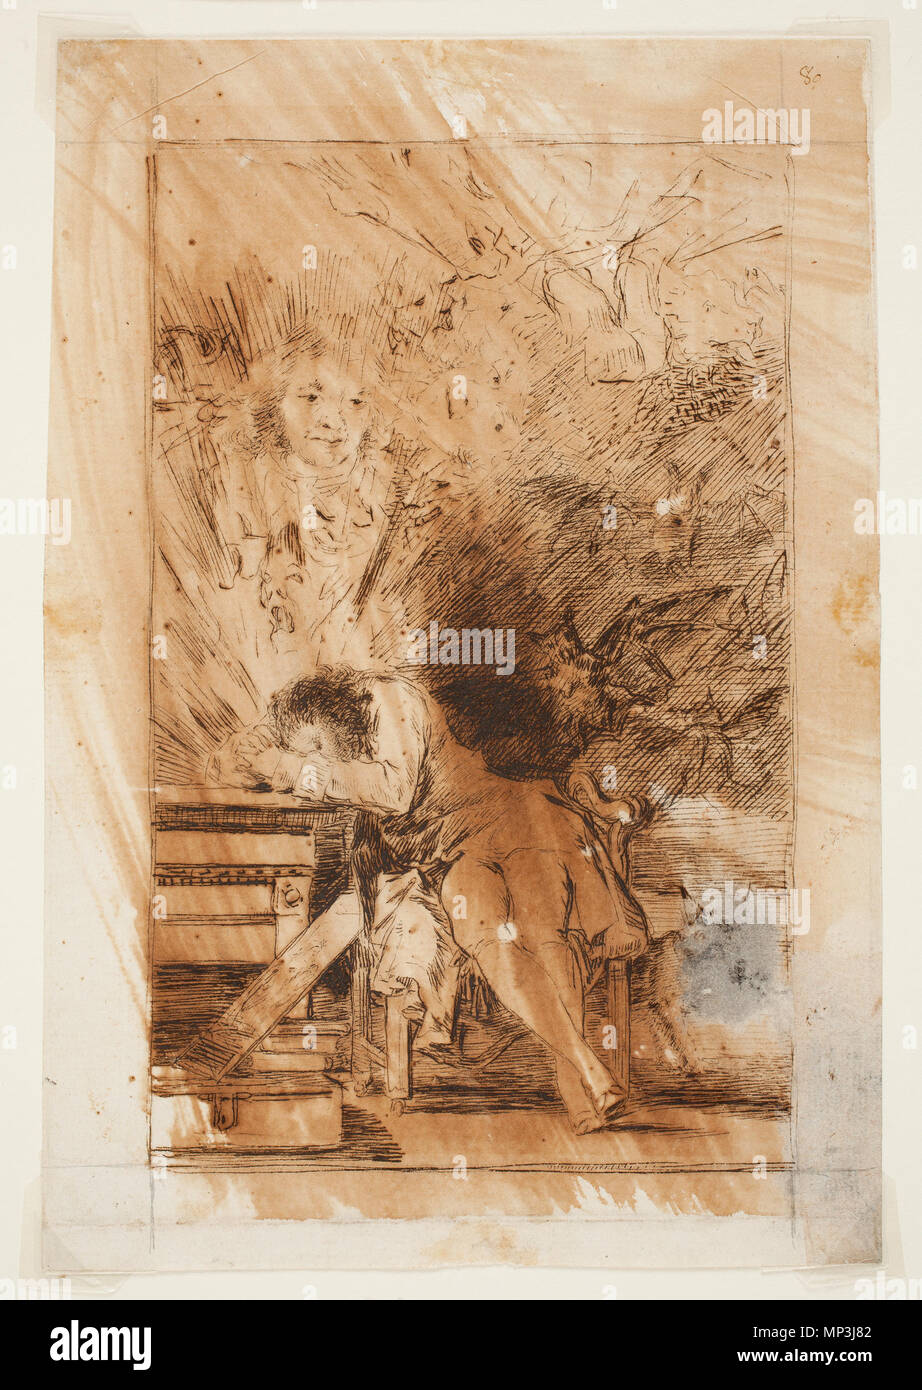 1025 Prado - Los Caprichos - preparatory drawing - No. 43 - El sueño de la razon produce monstruos Stock Photo